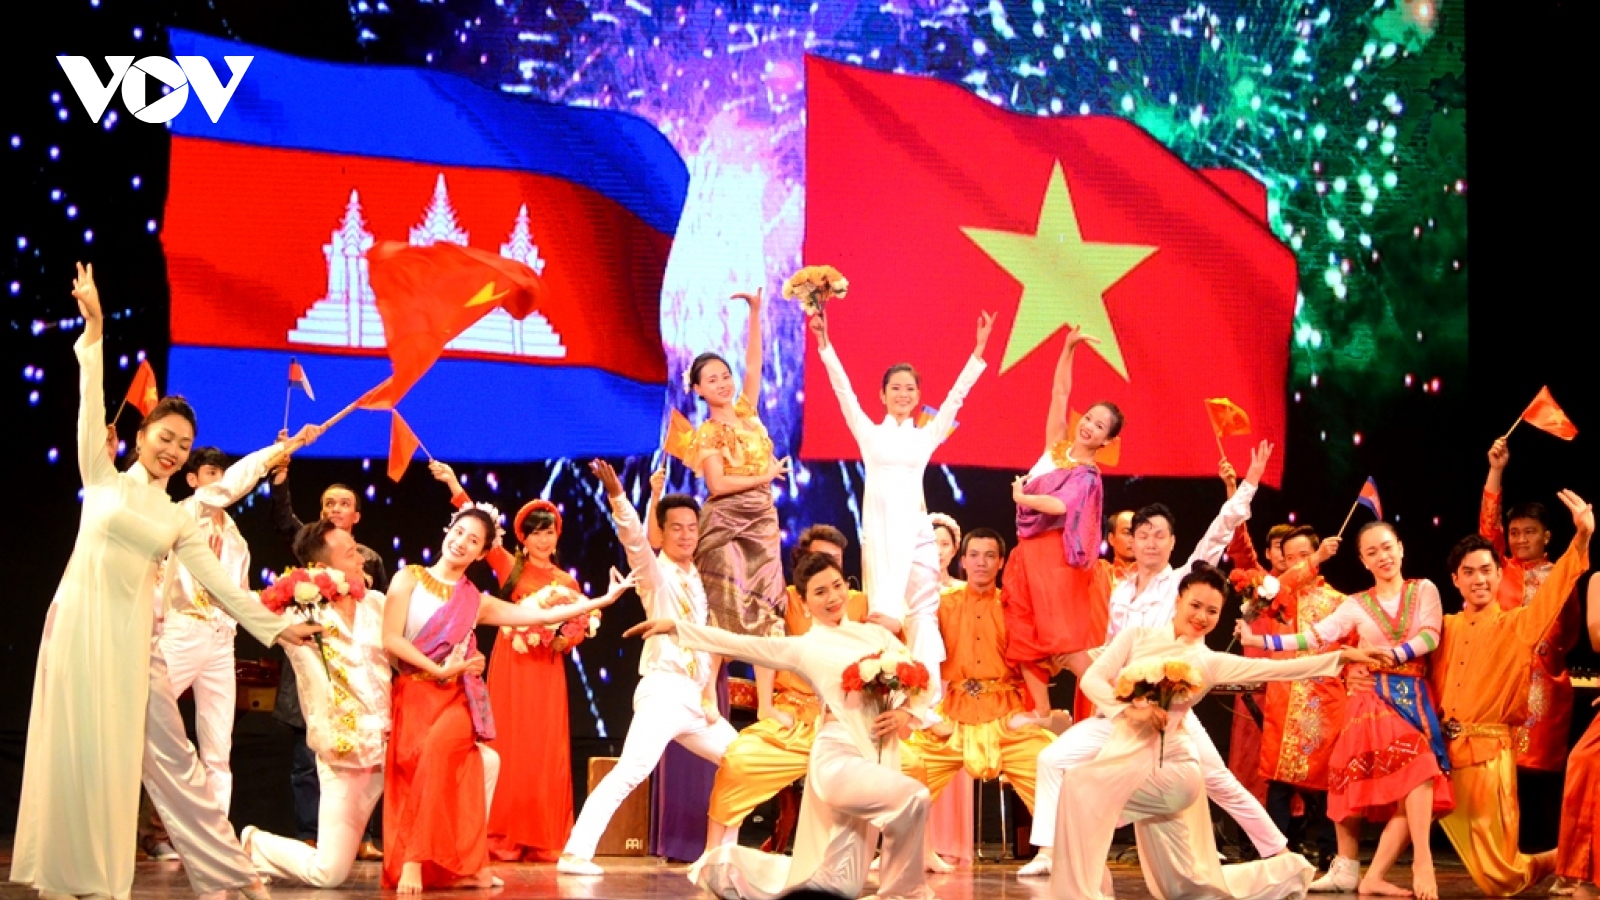 Việt Nam sẽ tham gia Liên hoan Văn hóa Á-Âu do Campuchia tổ chức